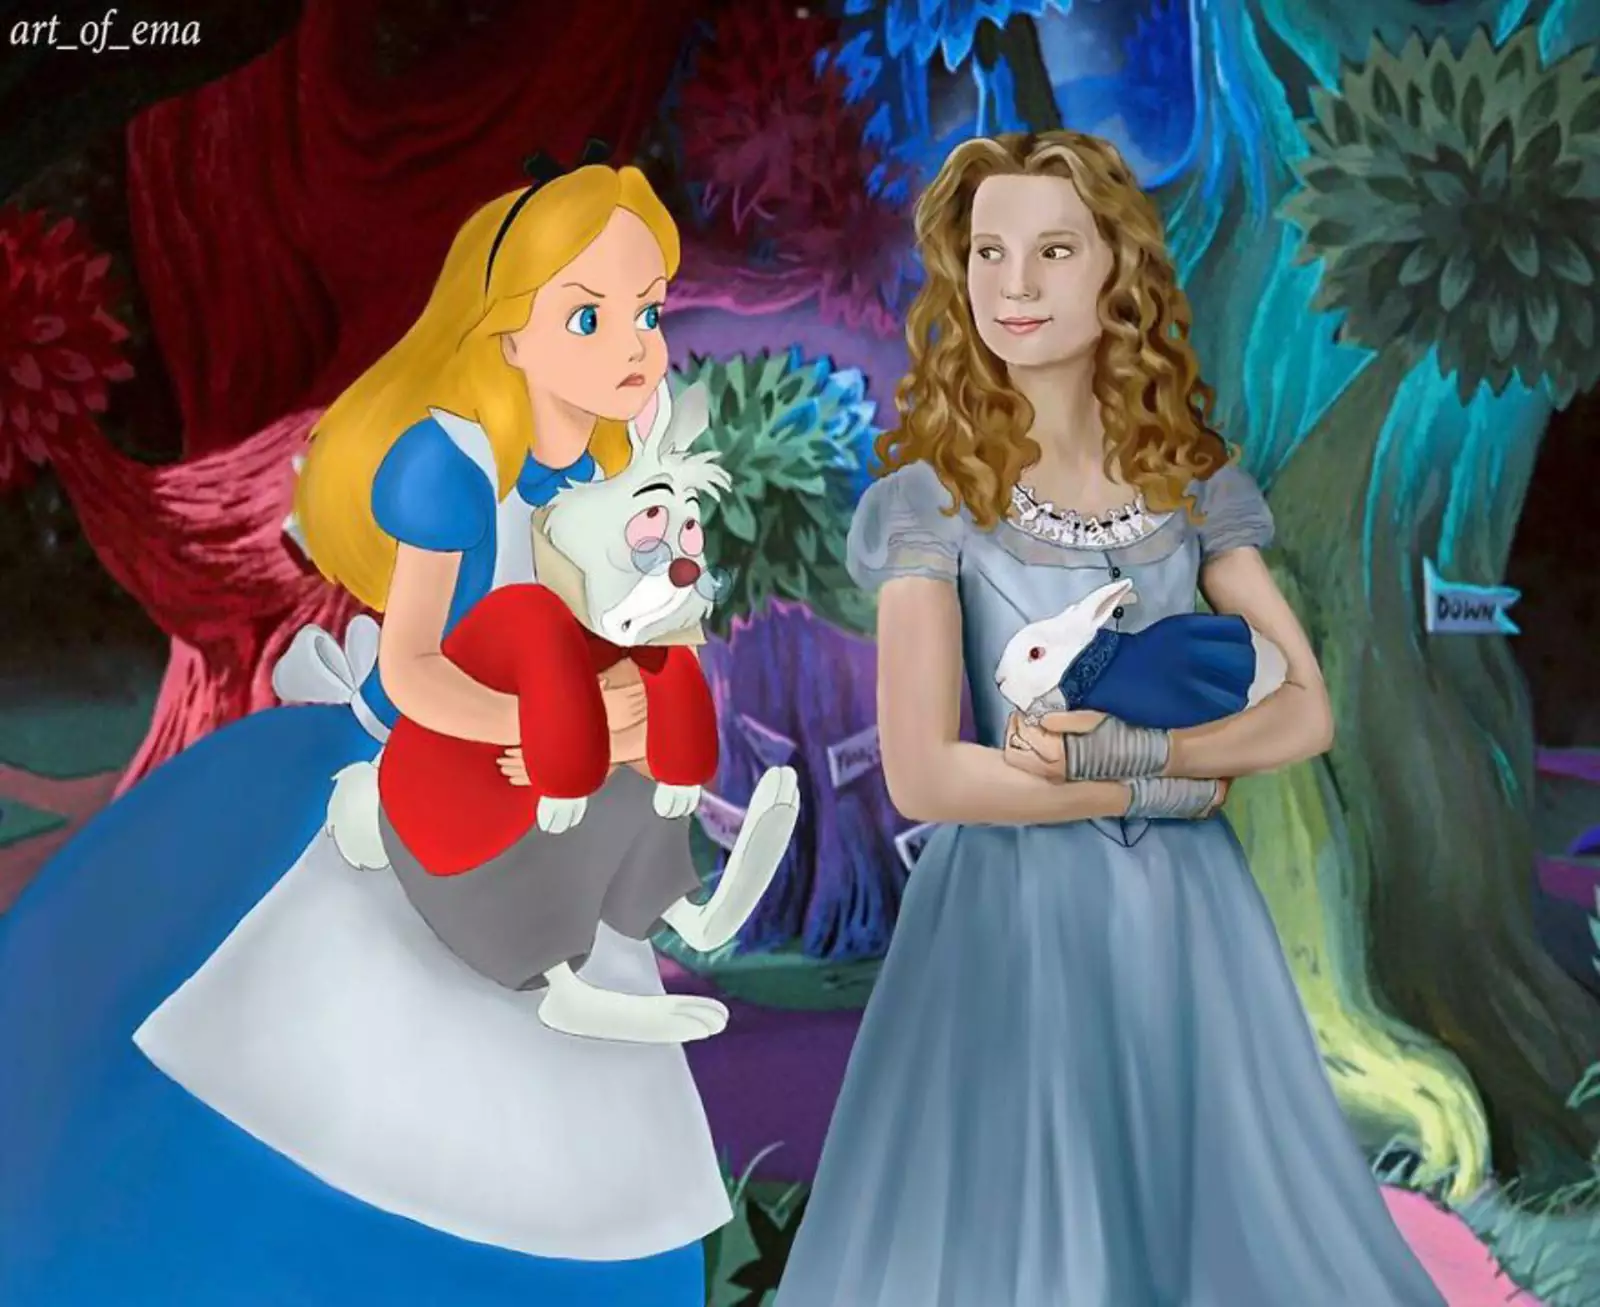 Принцесса чудес. Принцесса Алиса в стране чудес. Принцессы Дисней Алиса в стране чудес. Женские персонажи мультиков. Персонаж Диснея Алиса.